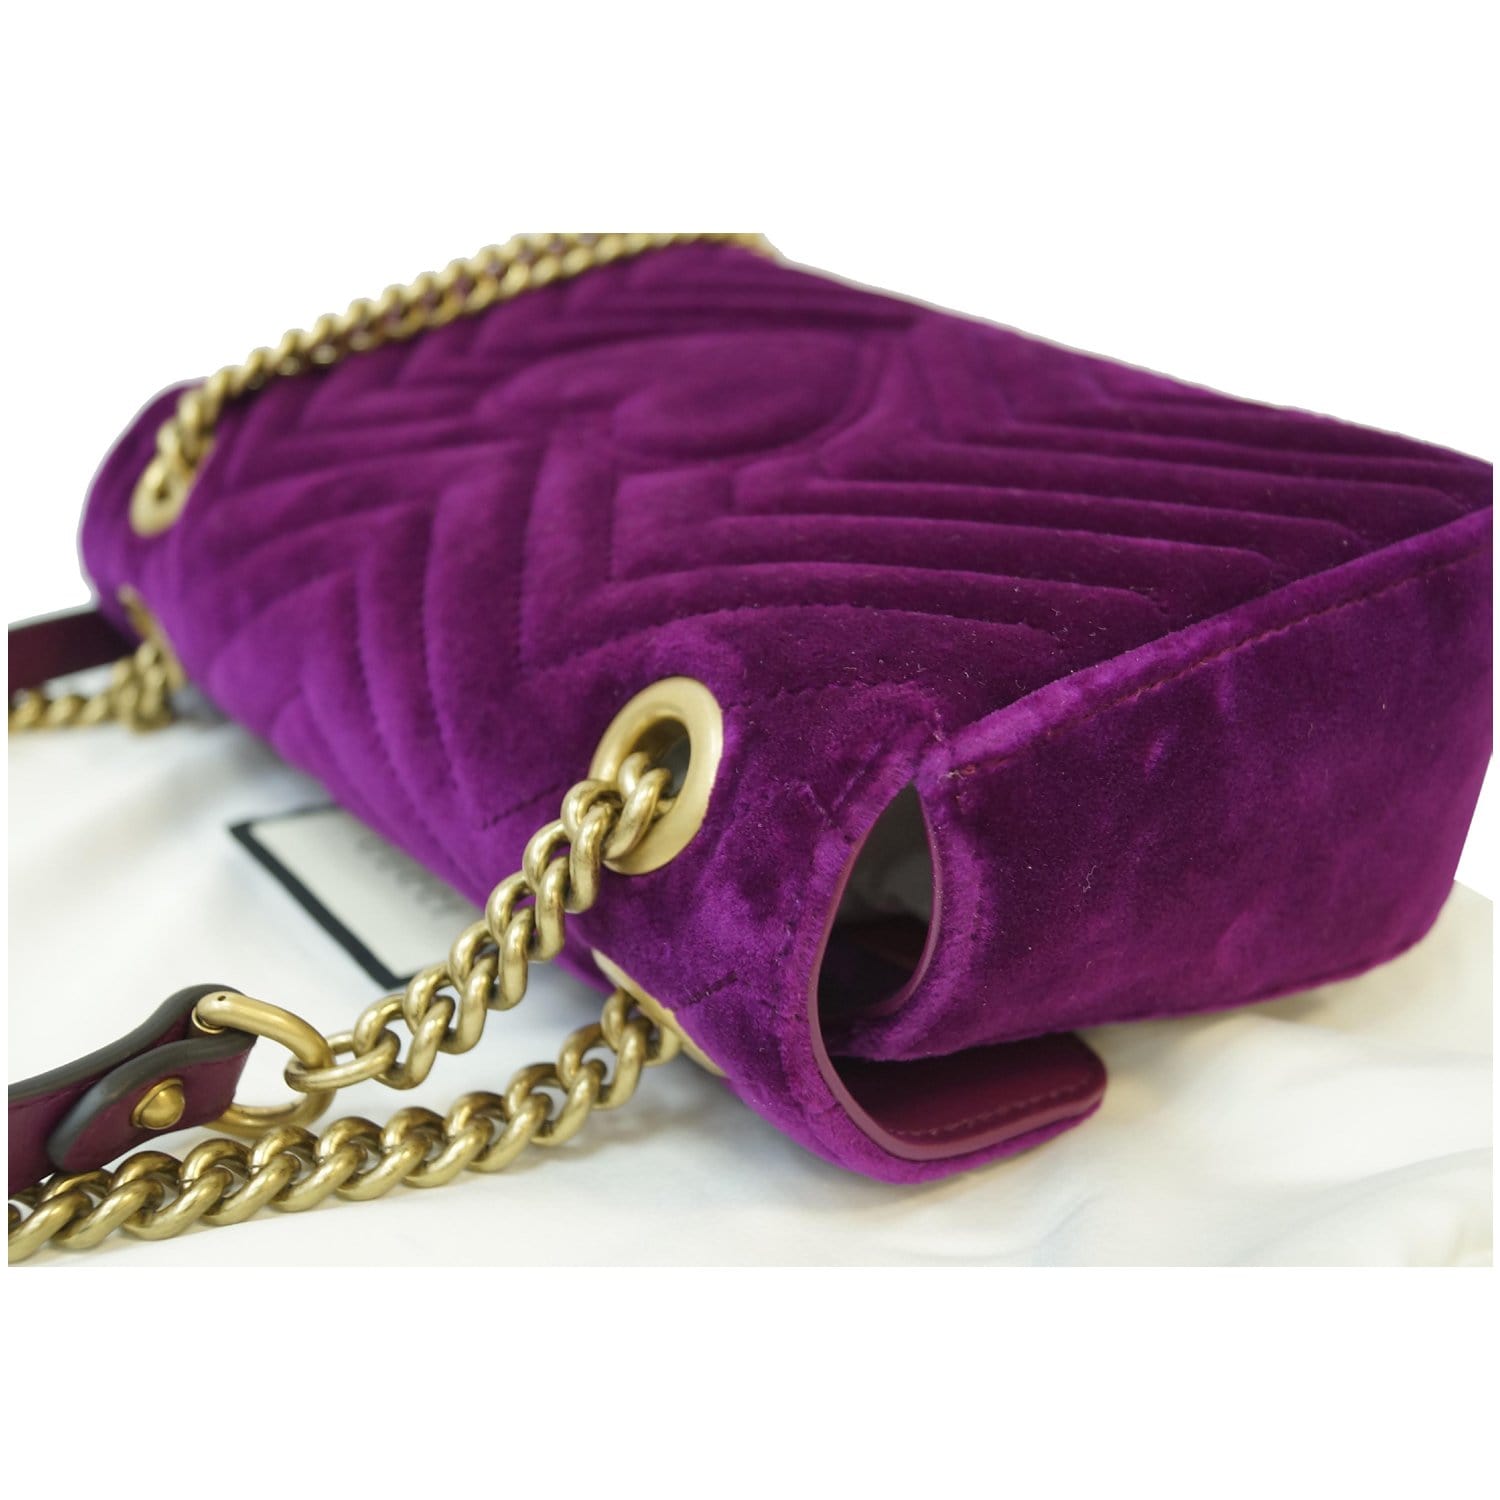 Gg marmont flap velvet crossbody bag Gucci Purple in Velvet - 36100494